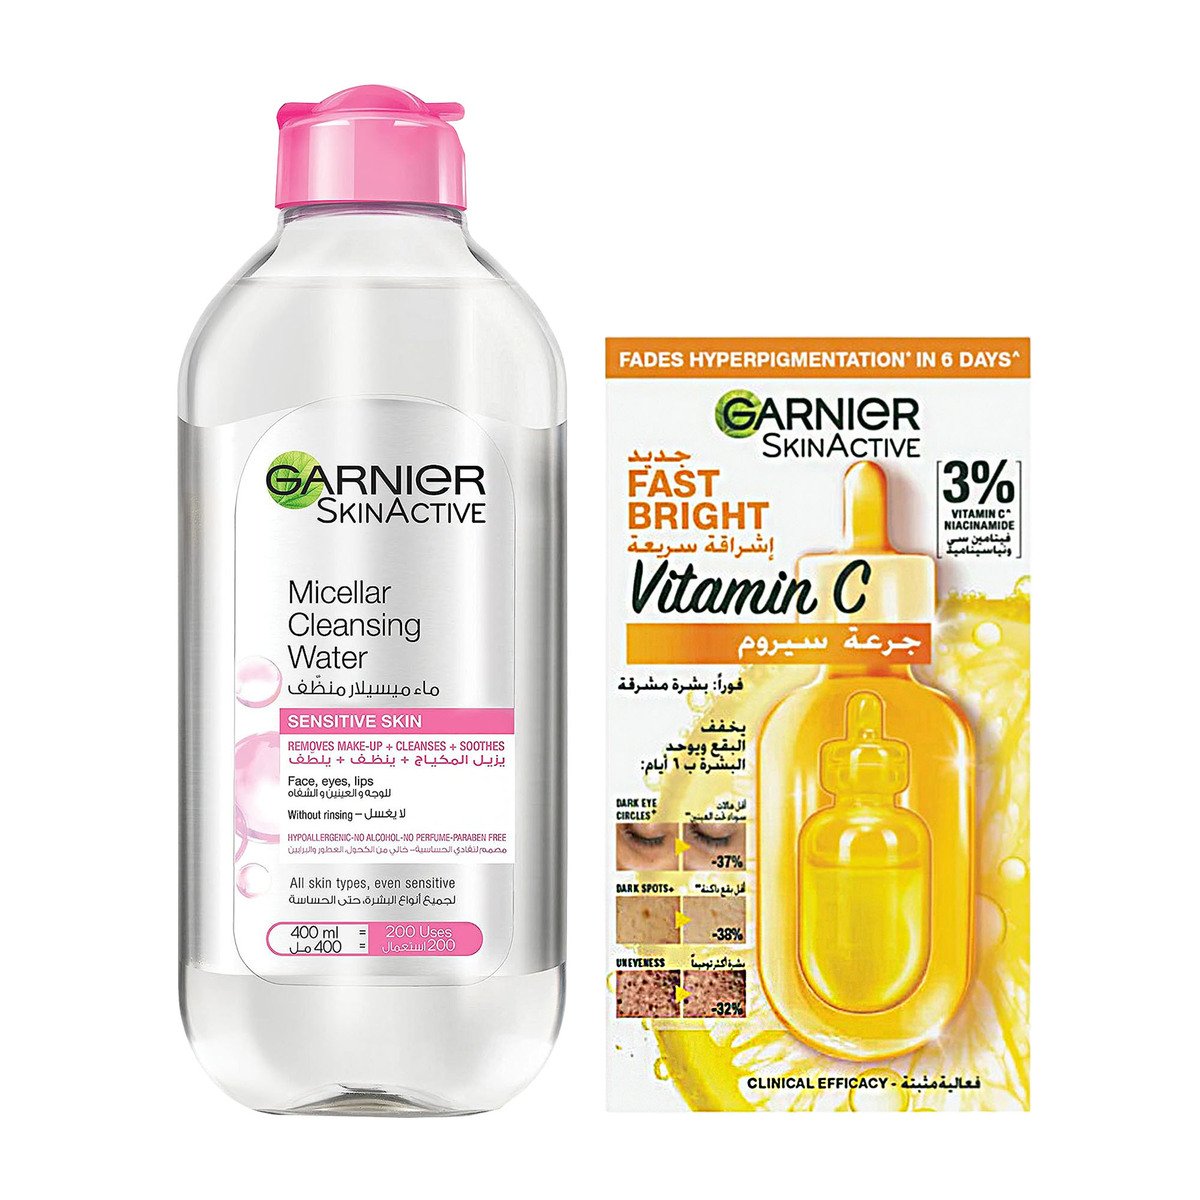 Buy Garnier Skin Active Micellar Cleansing Water 400 ml + Fast Bright Vitamin C 1.5 ml Online at Best Price | Facial Cleanser | Lulu UAE in UAE